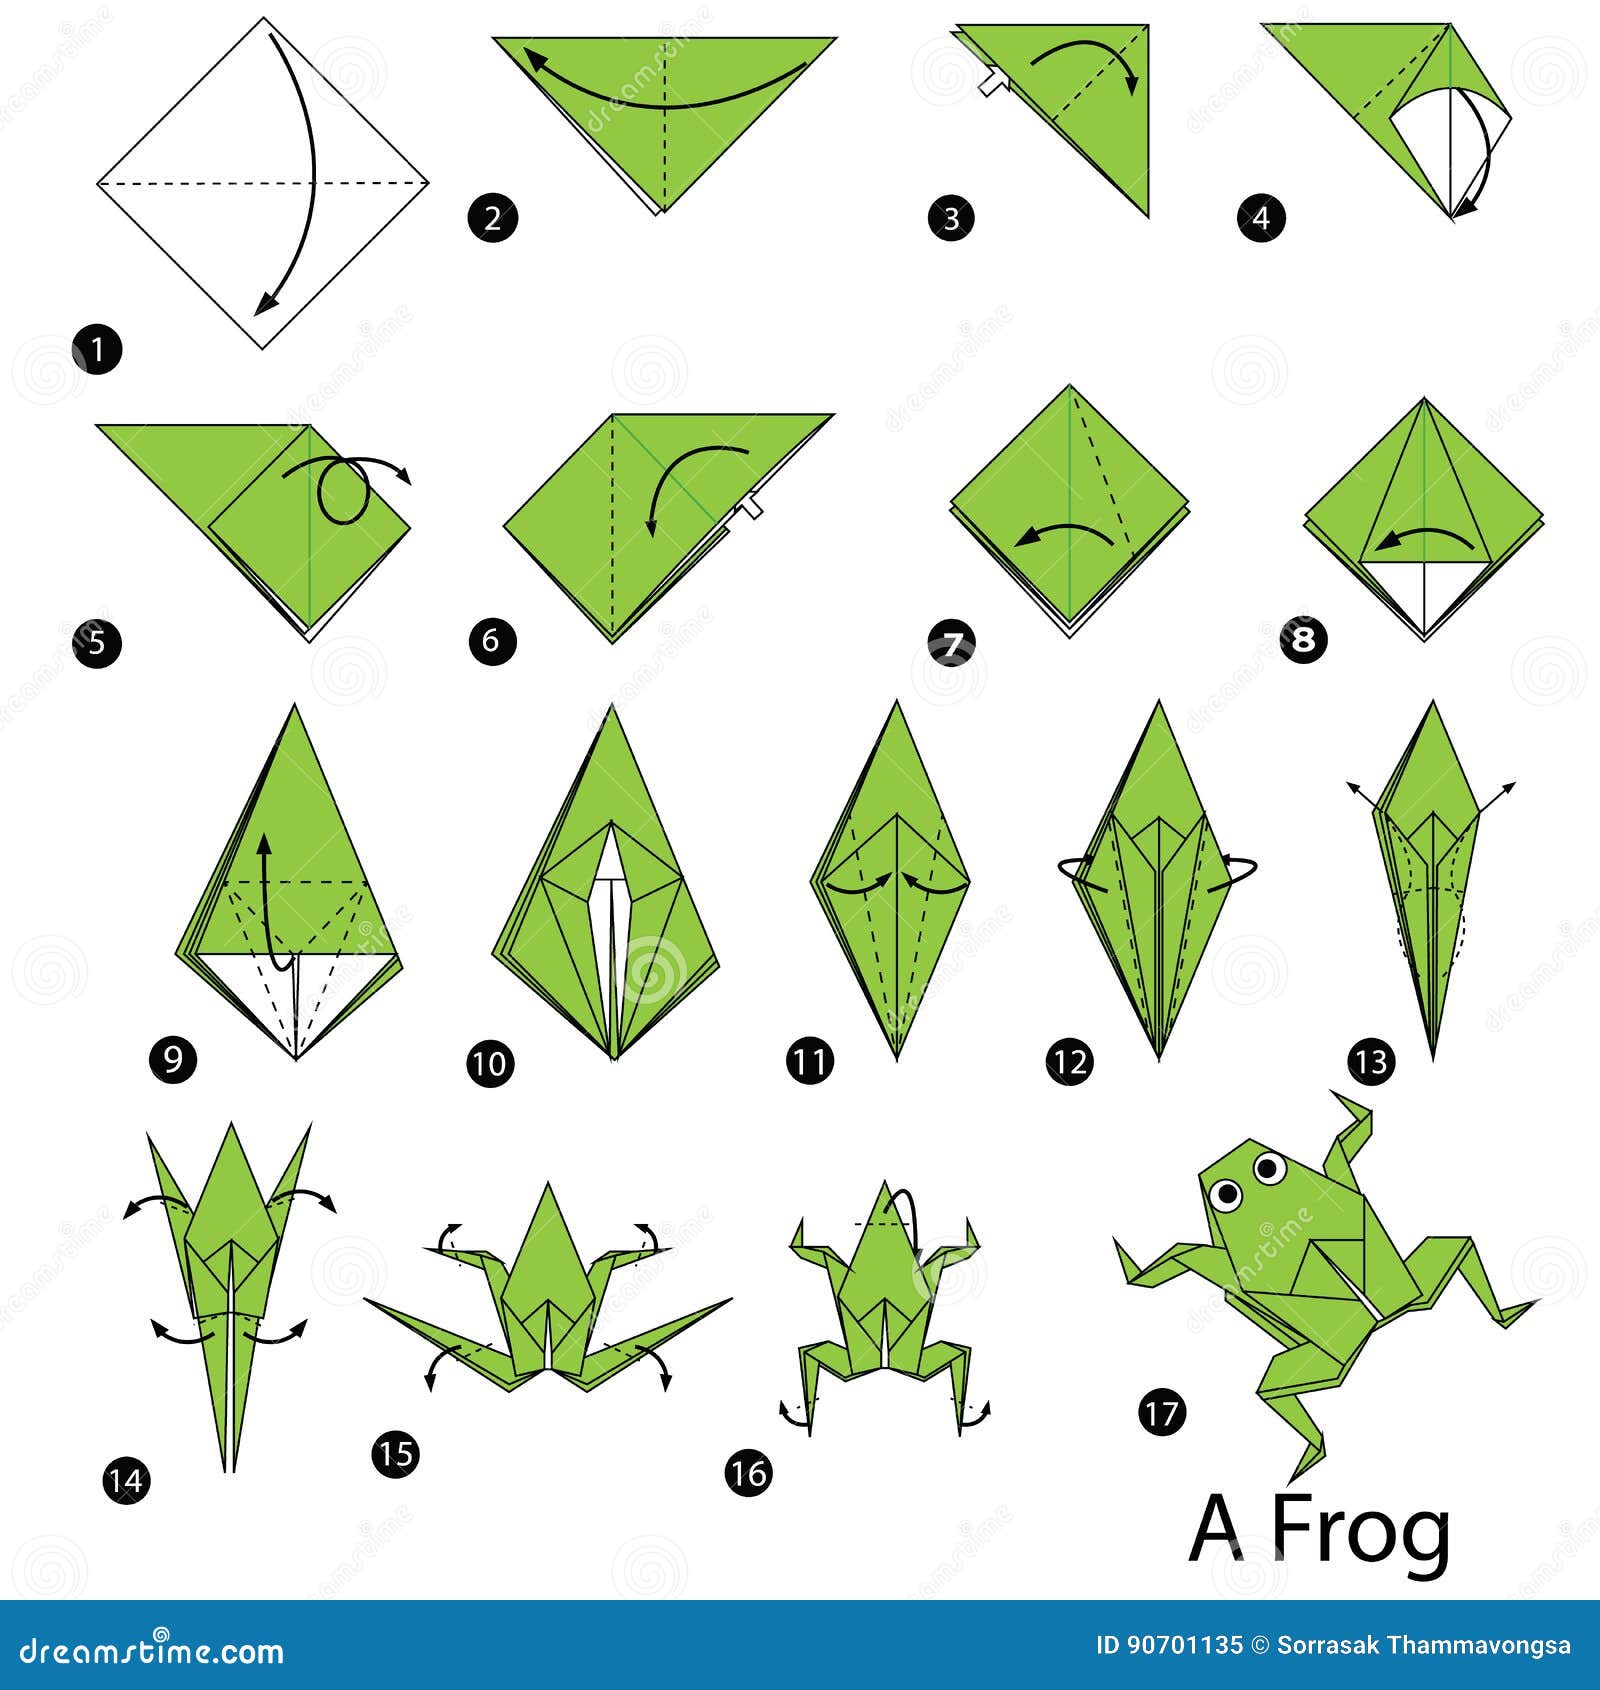 Как сделать лягушку из бумаги. Лягушка из бумаги. Оригами из бумаги для детей лягушка. Оригами лягушка прыгающая. Лягушка оригами из бумаги схемы.